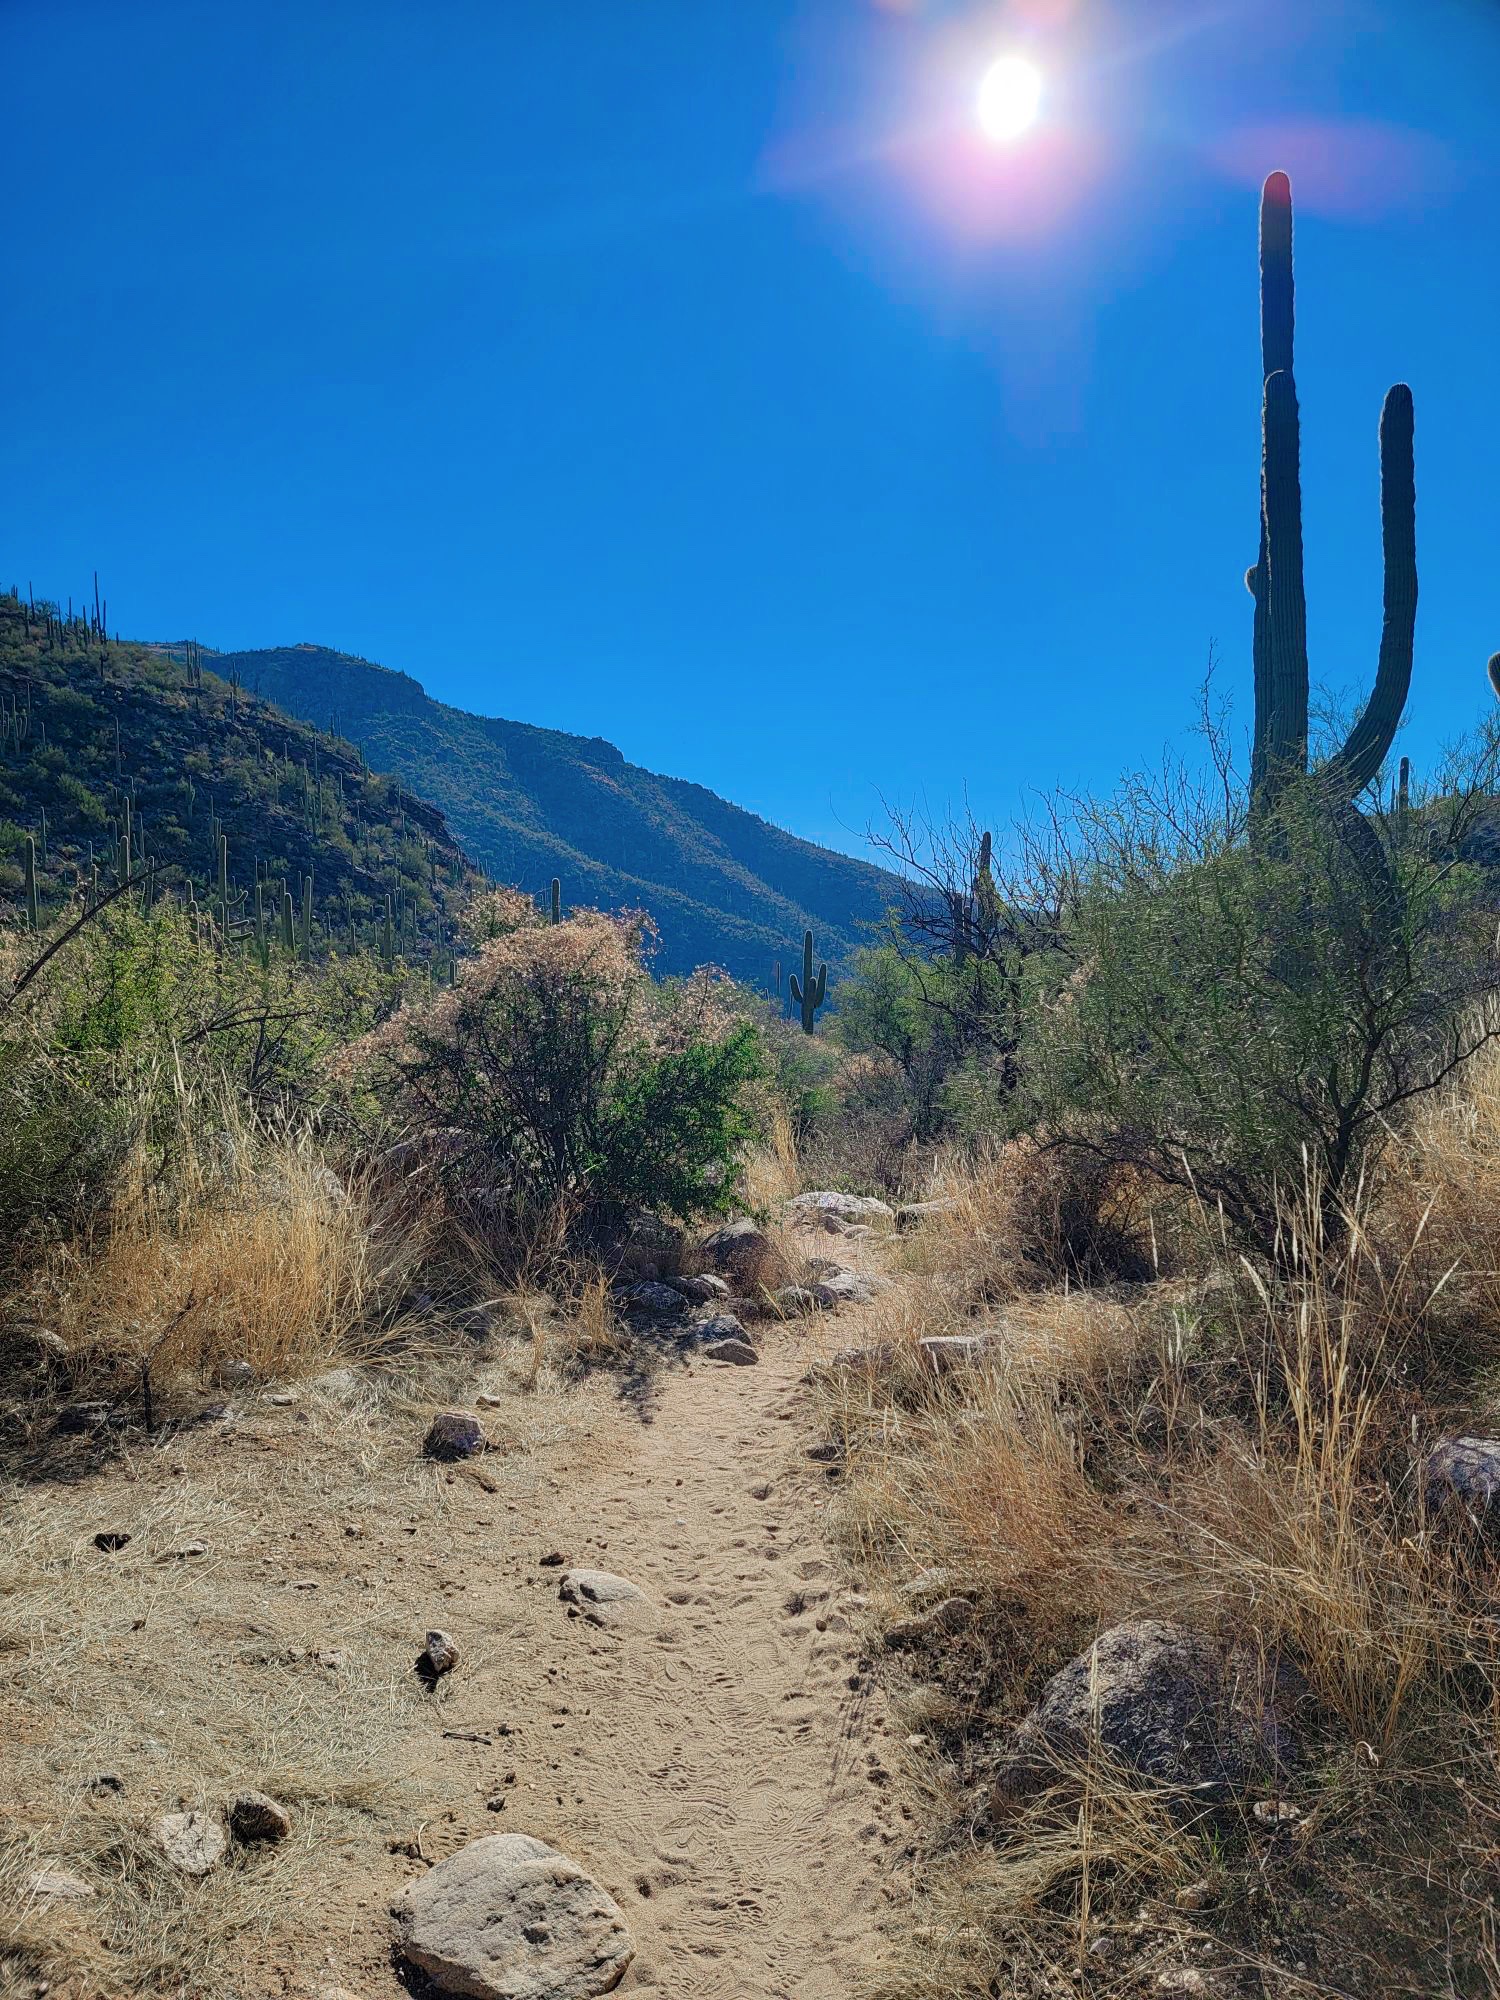 Tucson'daki en iyi yürüyüş parkurları